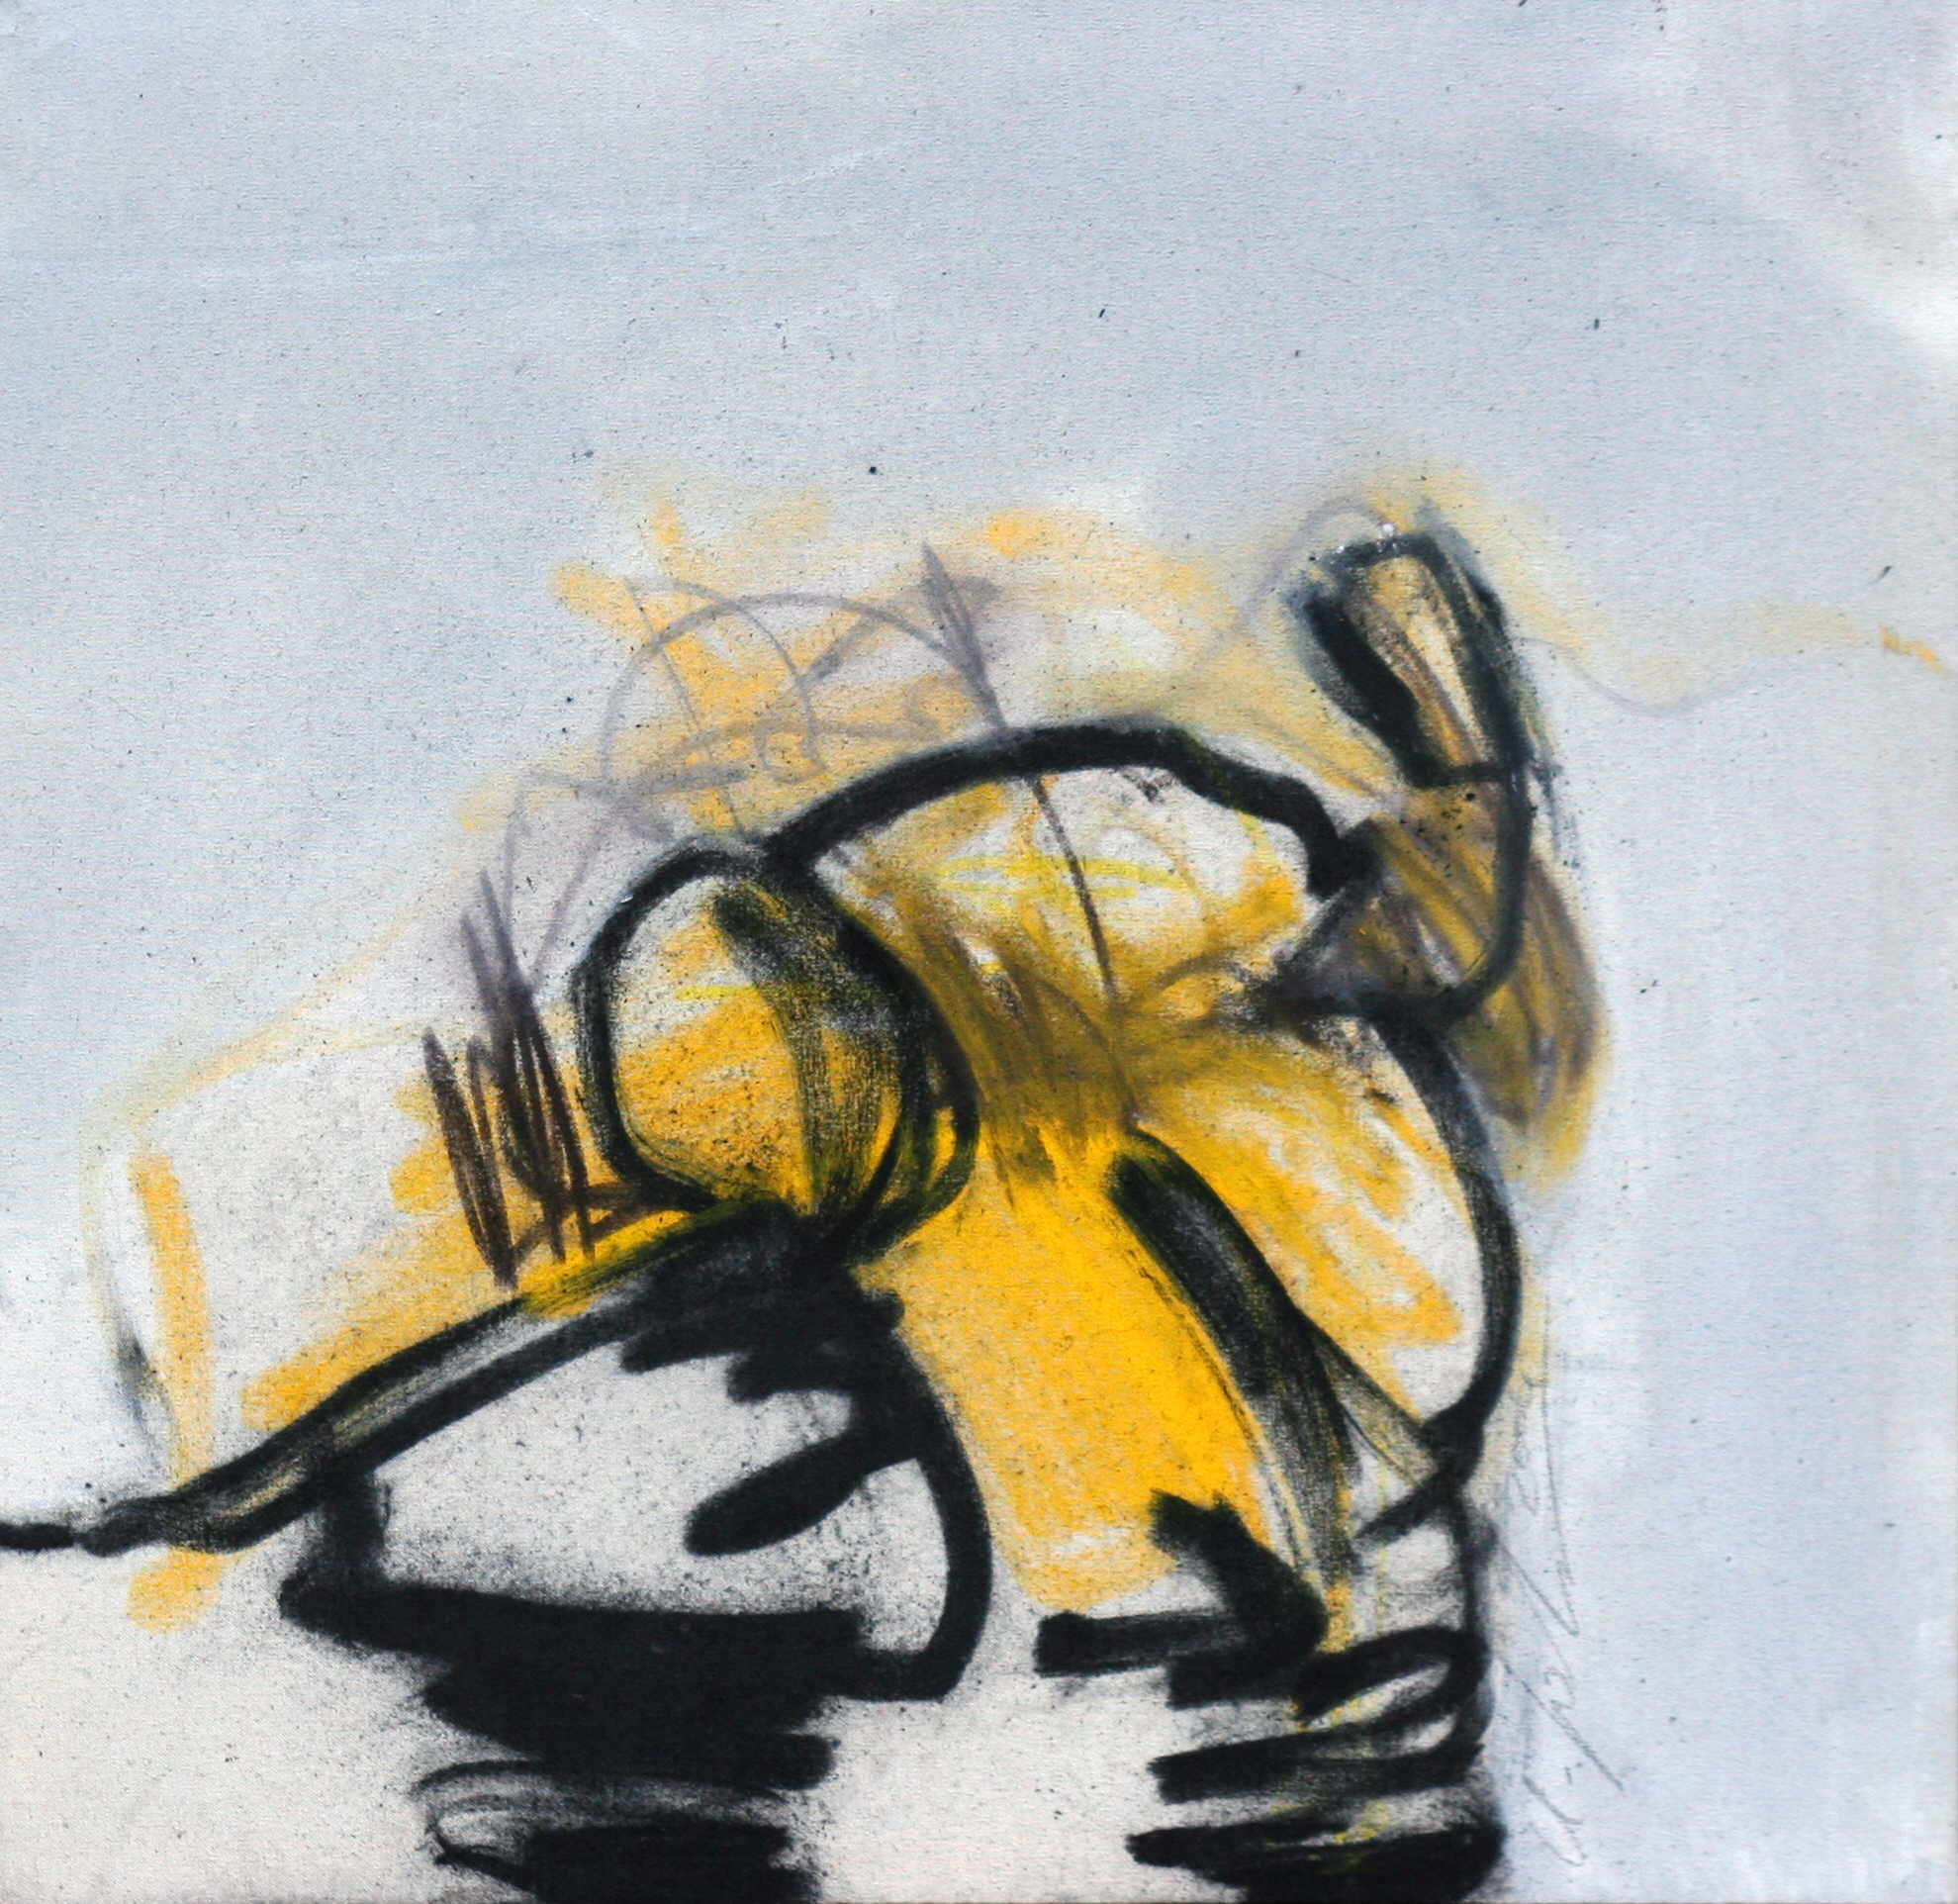 Hohenberger Udo 
"Bum - Bum", 2004
graphite, charcoal, acrylic / canvas
55 x 55 cm